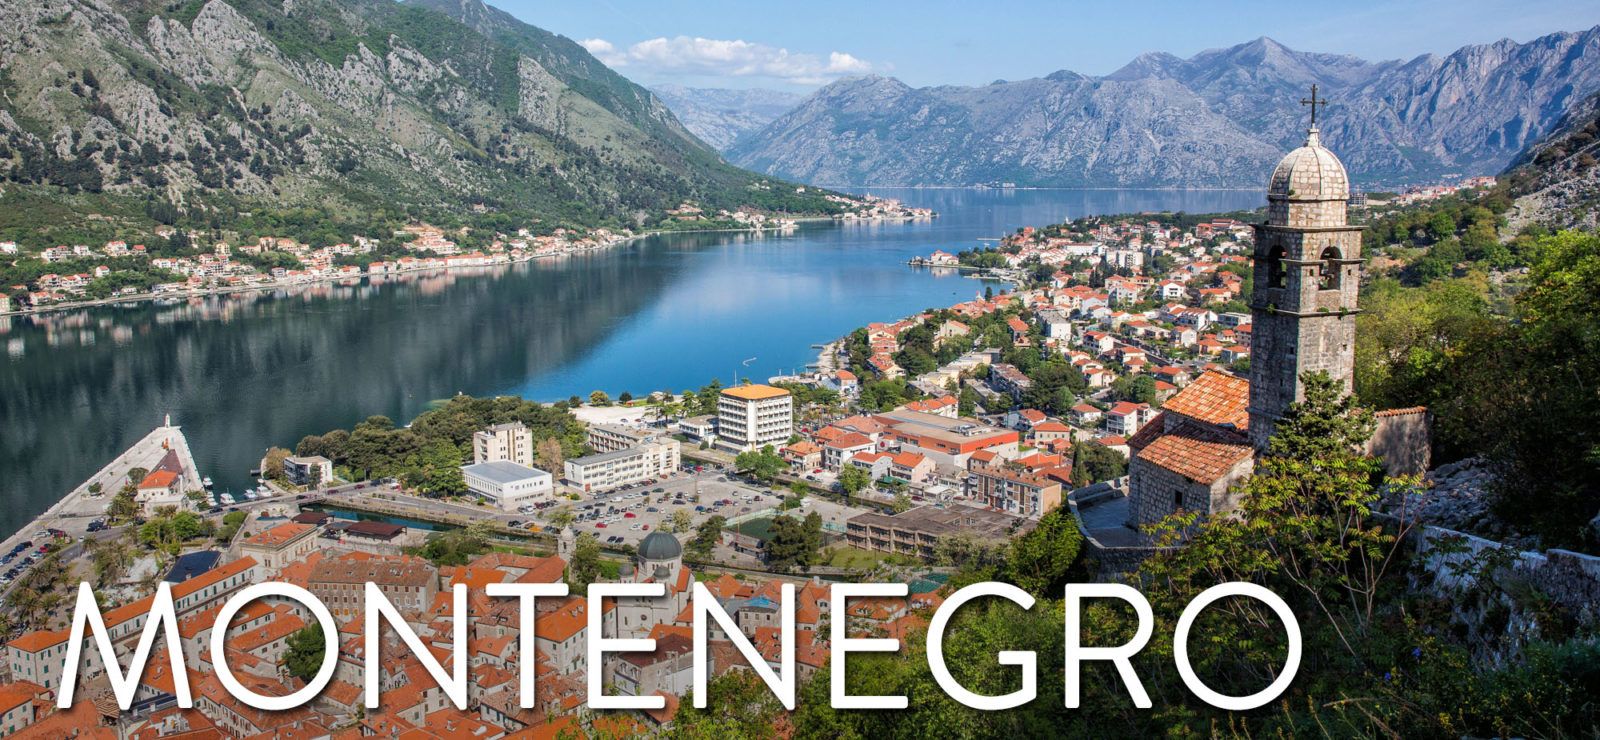 montenegro travel guide – earth trekkers